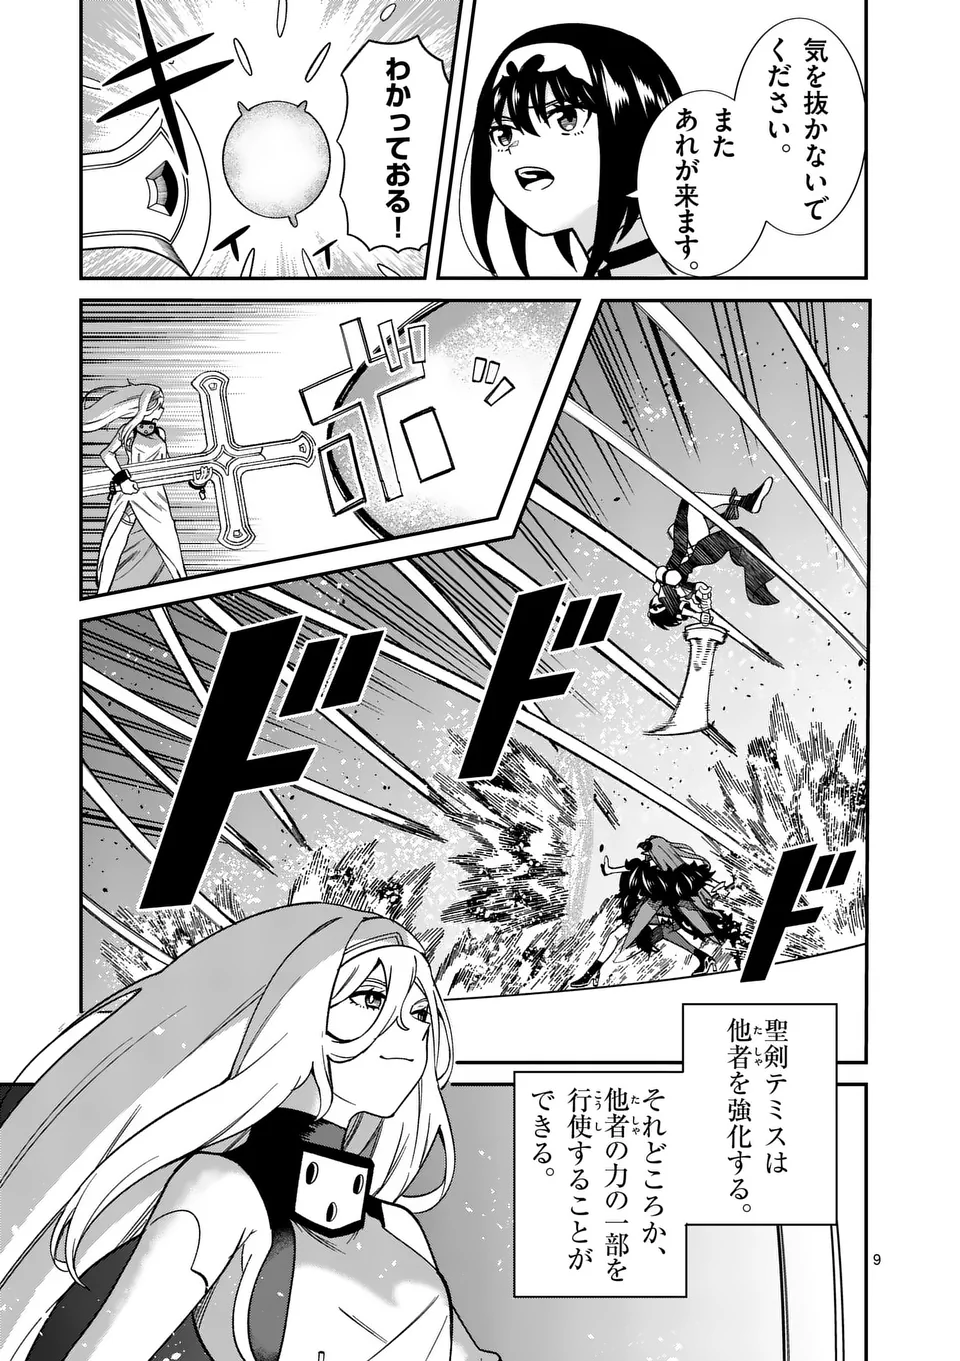 Power-Hara Genkai Yuusha, Maougun kara Koutaiguu de Scout sareru - Chapter 13 - Page 9